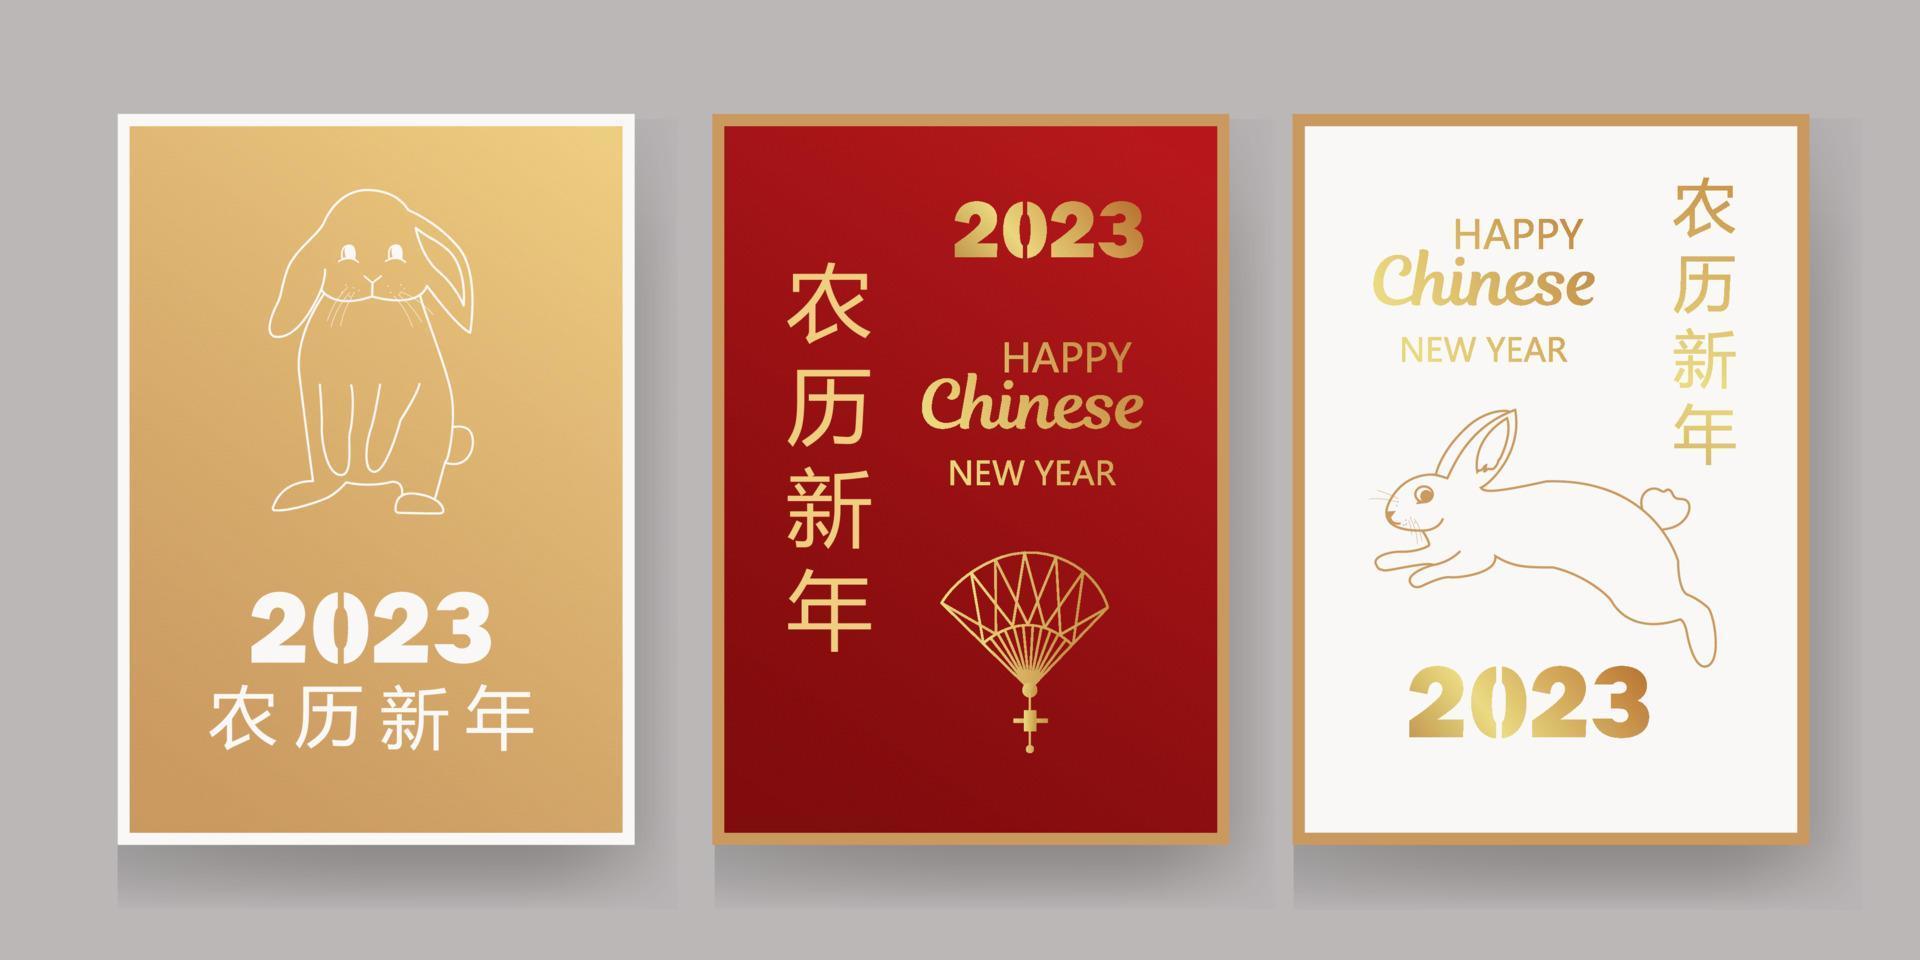 año nuevo chino 2023 paquete de dinero de sobre rojo afortunado sobre fondo de color para el año del conejo traducción feliz año nuevo chino 2023 vector